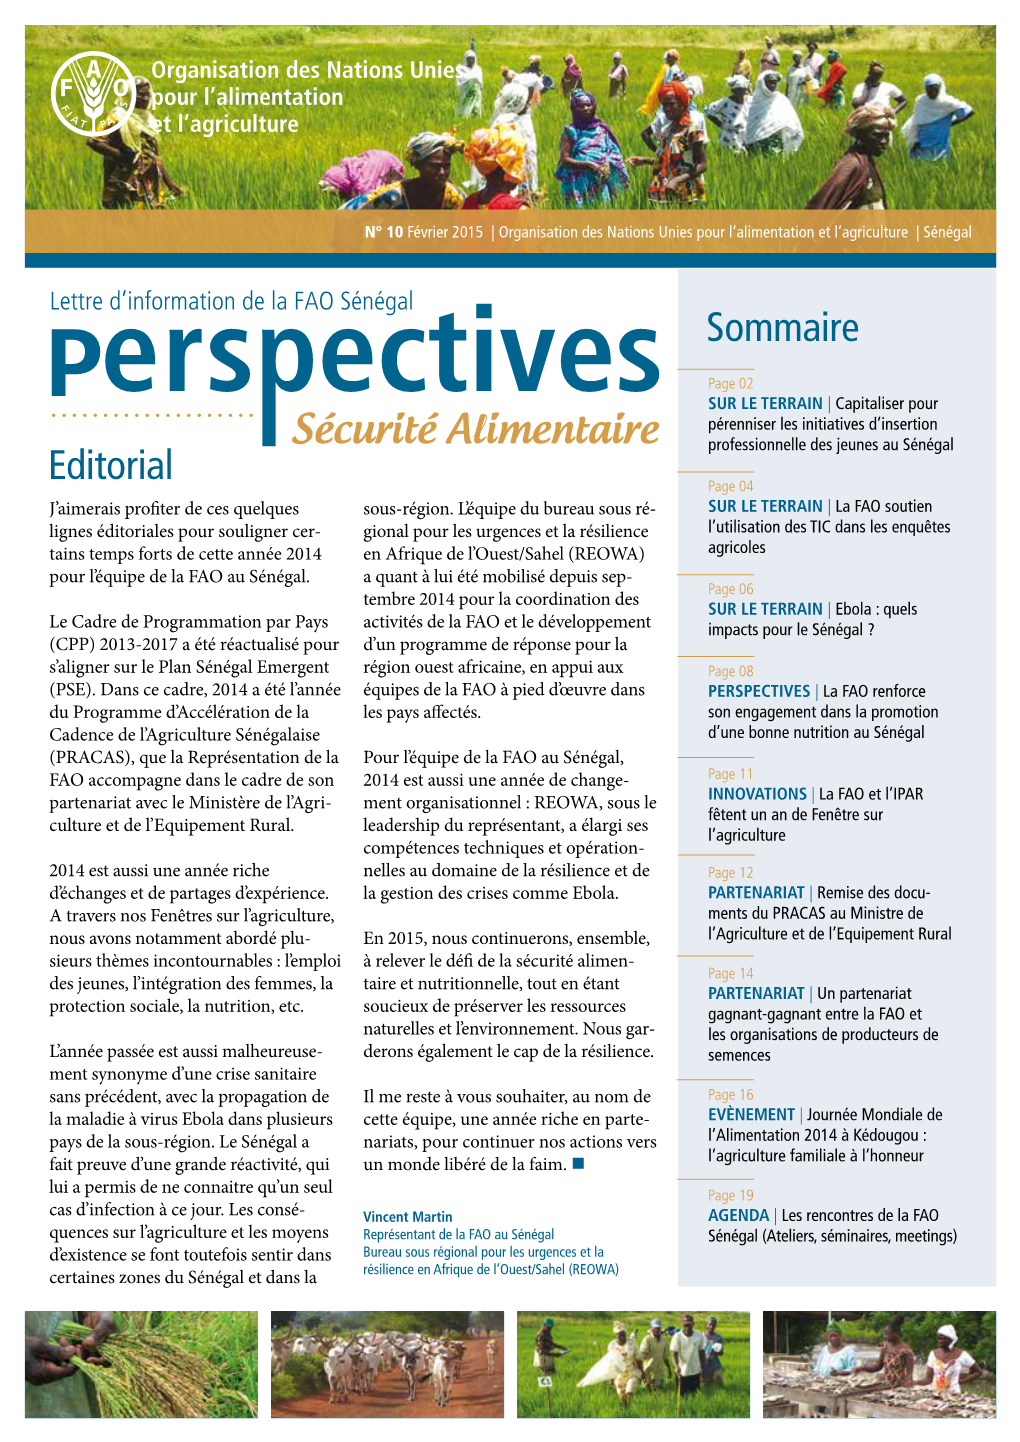 Newsletter De La Représentation De La FAO Au Sénégal. N° 10 Février 2015